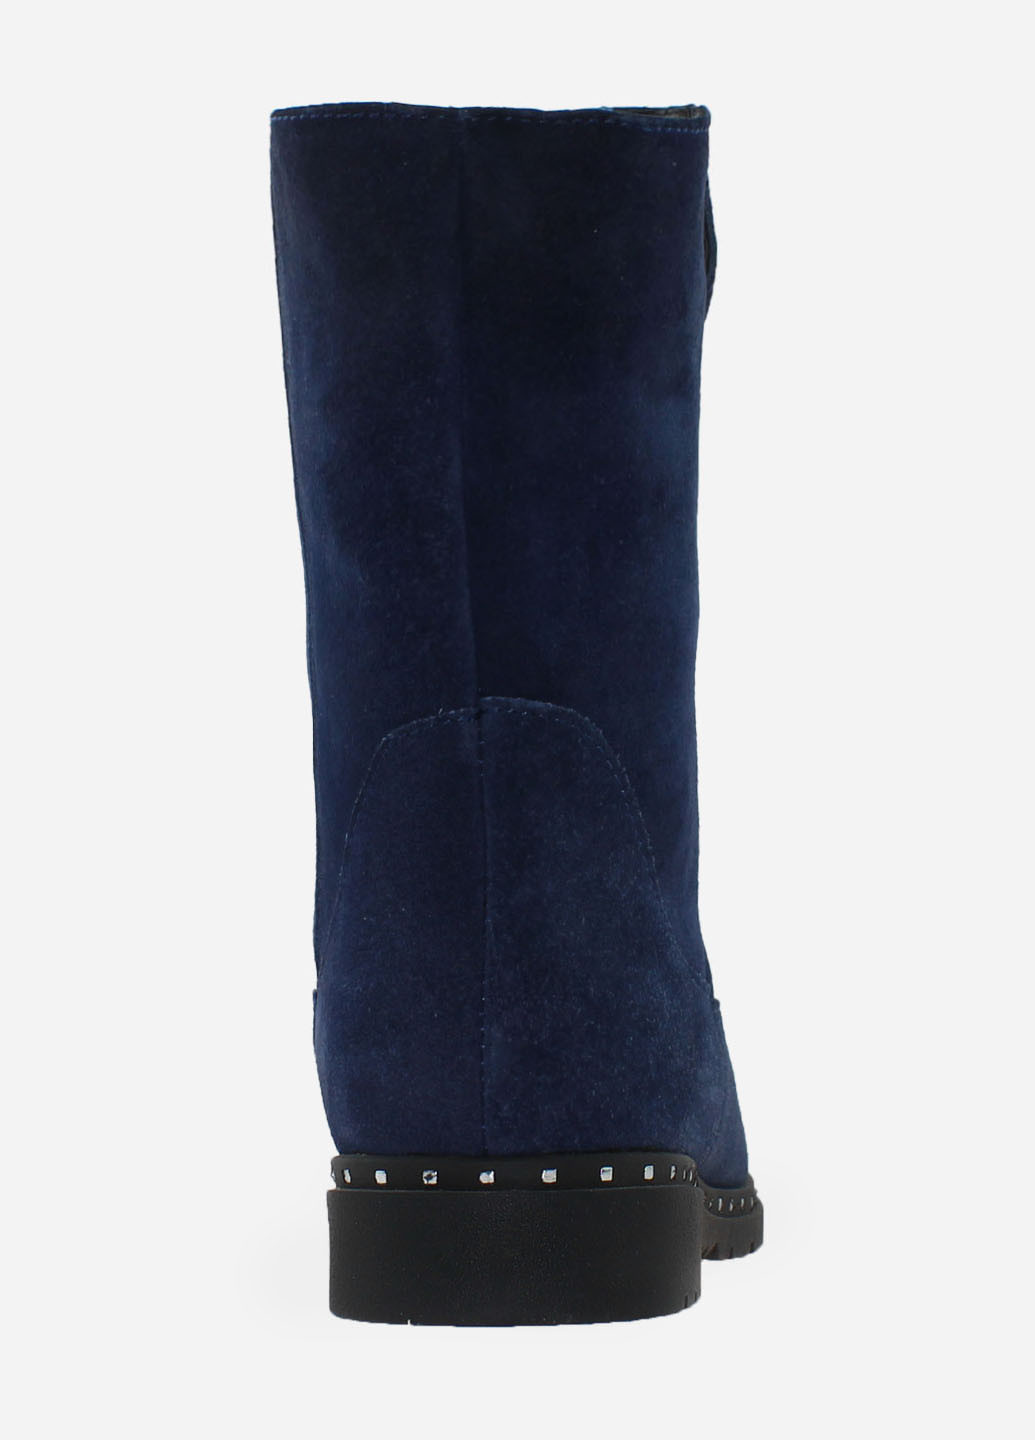 Зимние ботинки rg18-53057-11 синий Gampr из натуральной замши